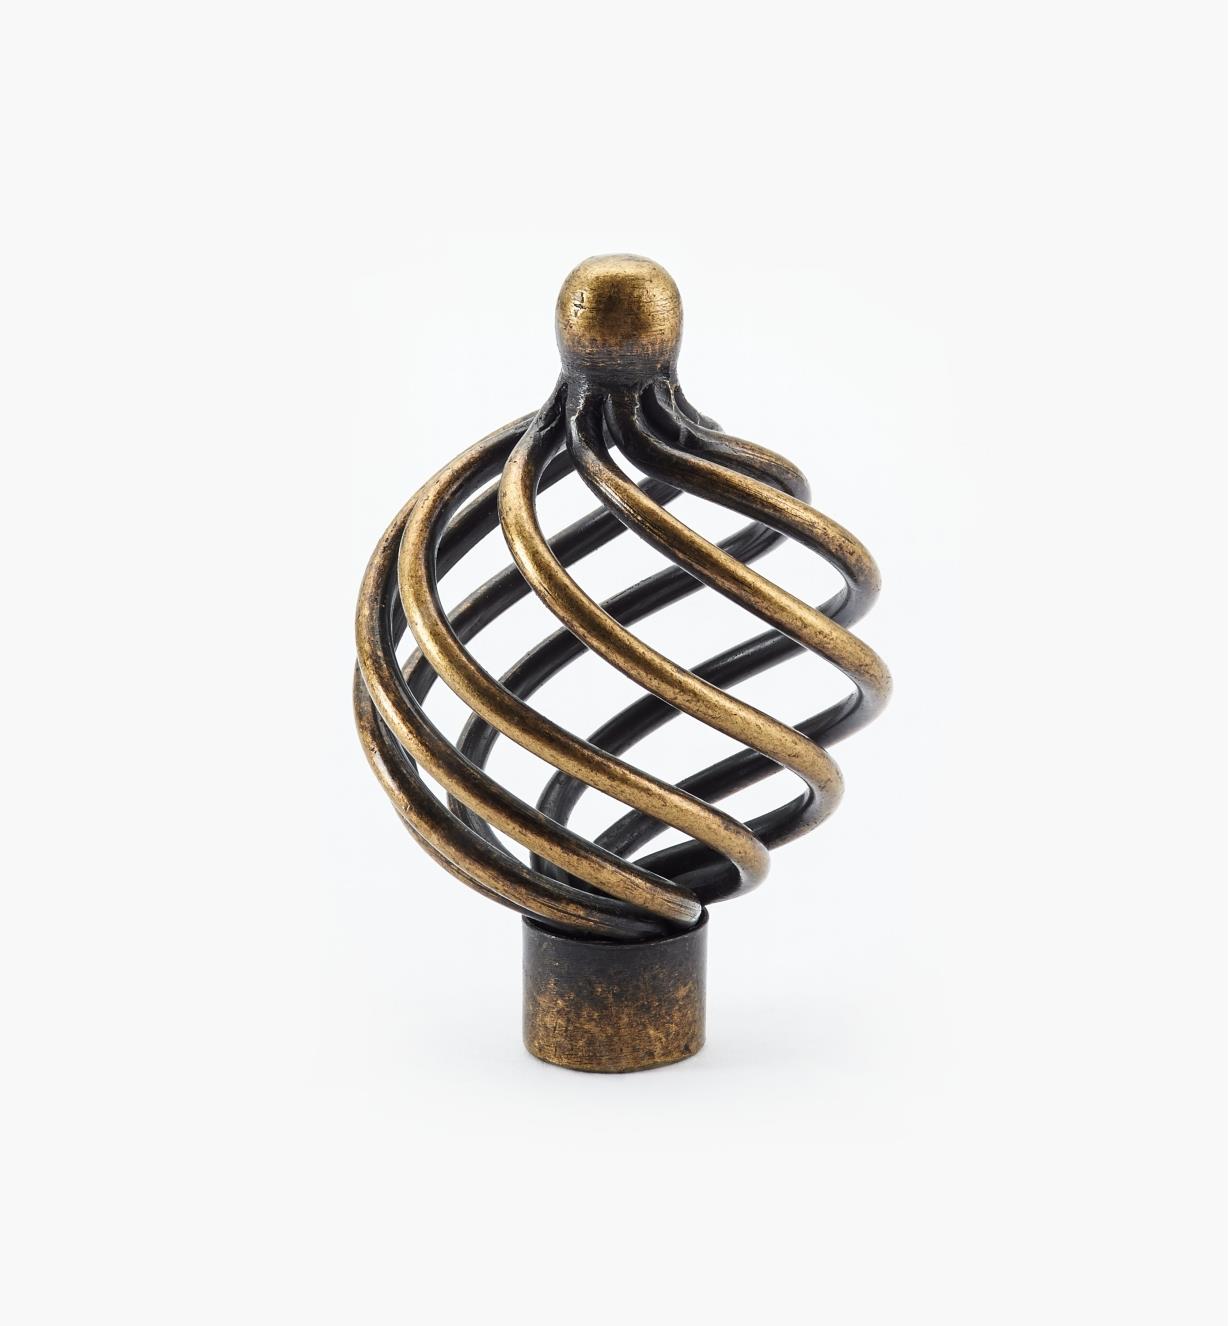 02W1152 - 1 5/8" × 2 3/8" Antique Brass Round Knob